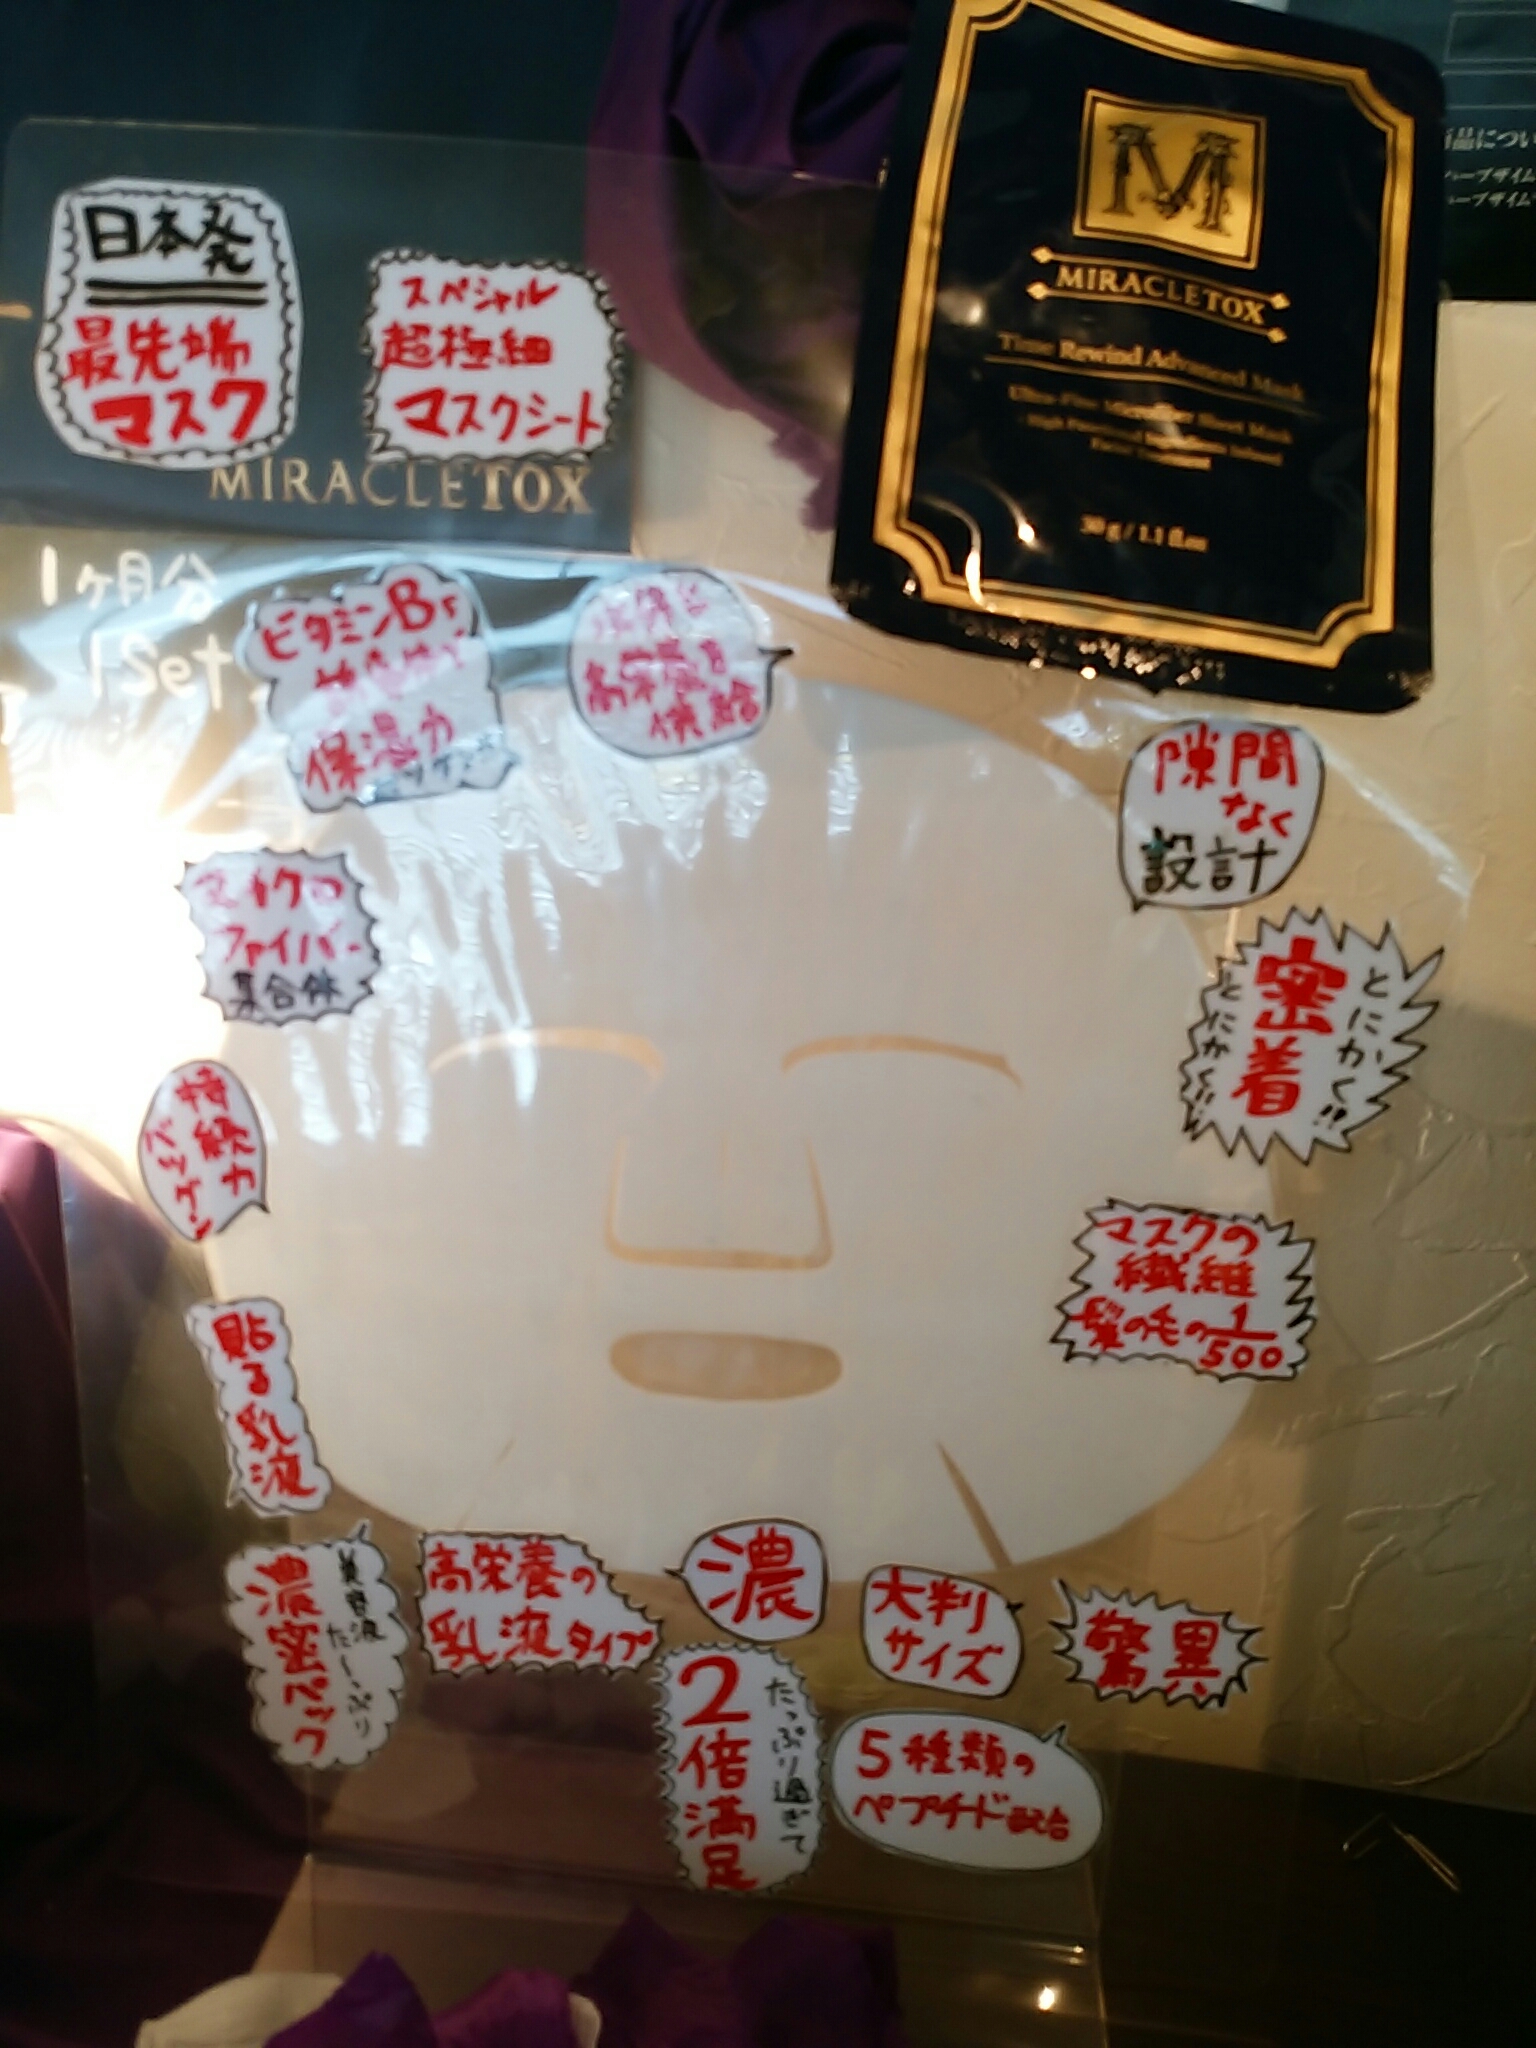 ミラクルトックスフェイスマスク☆ | 佐賀県佐賀市のリラクゼーションビューティハウス Kaya